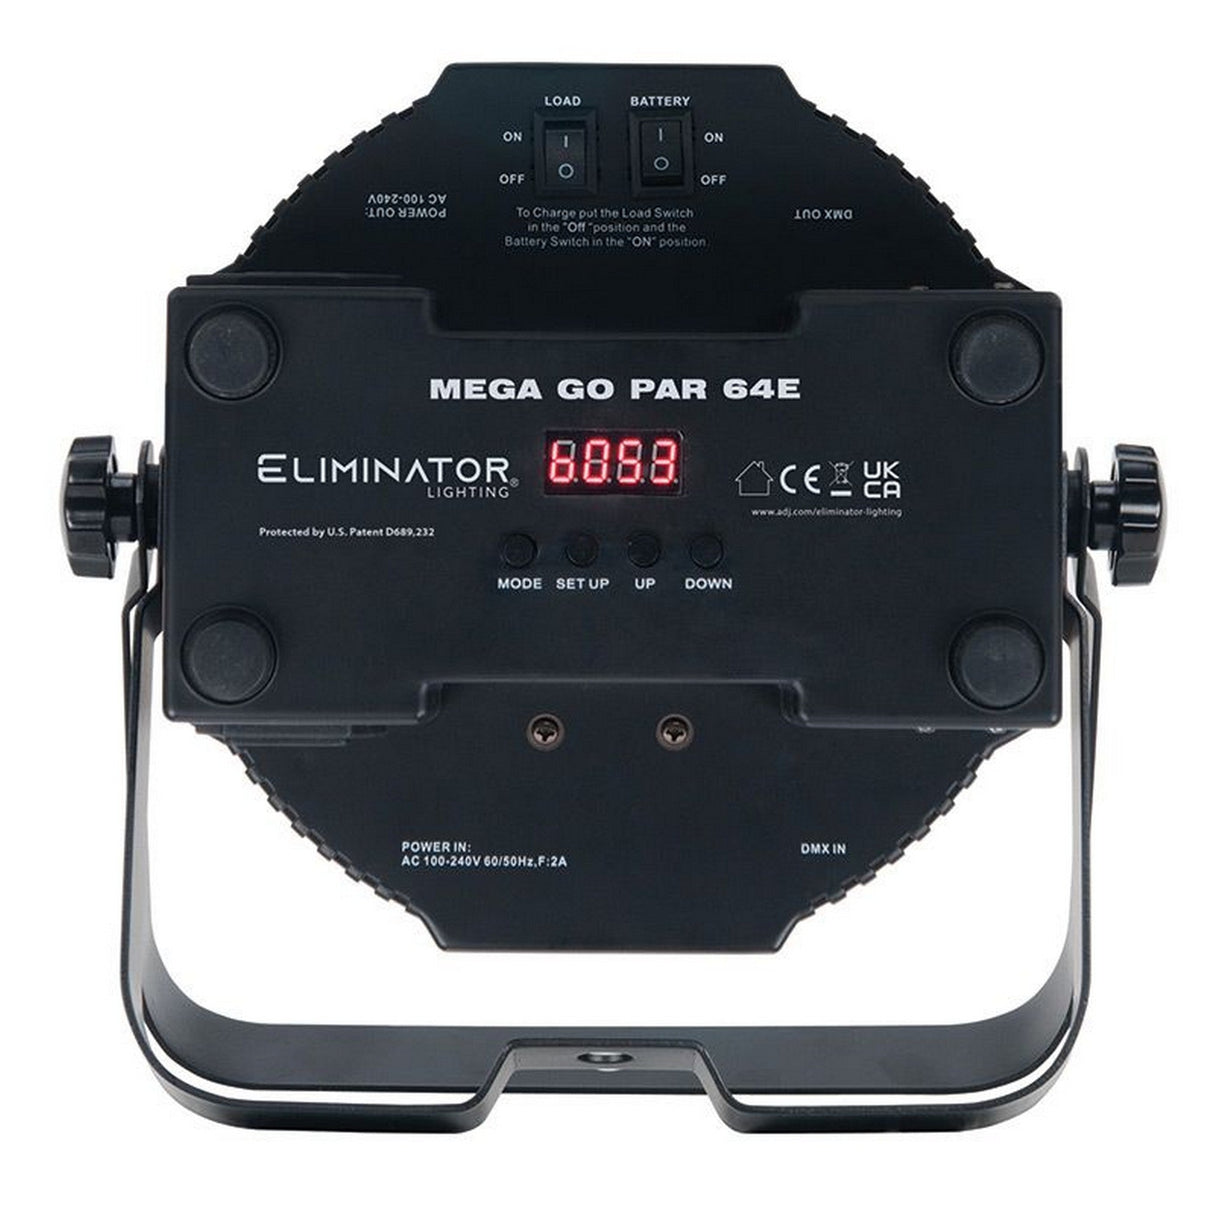 Eliminator Lighting MEGA GO PAR 64E LED with Wired Digital Communication Network